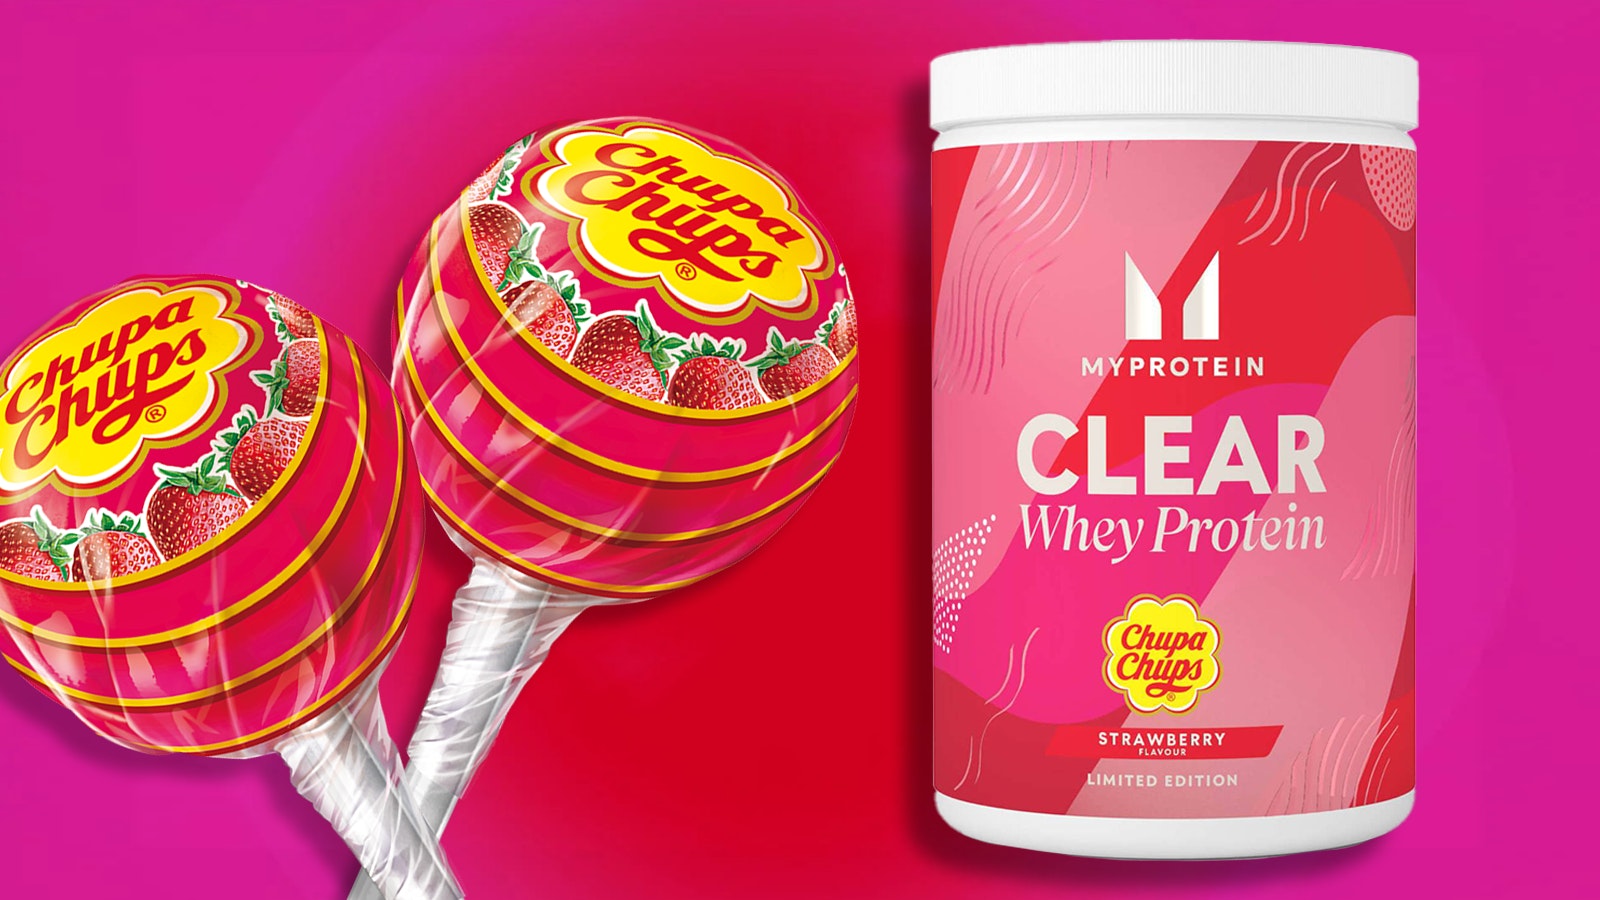 MyProtein Clear Whey Protein "Chupa Chups" Flavor